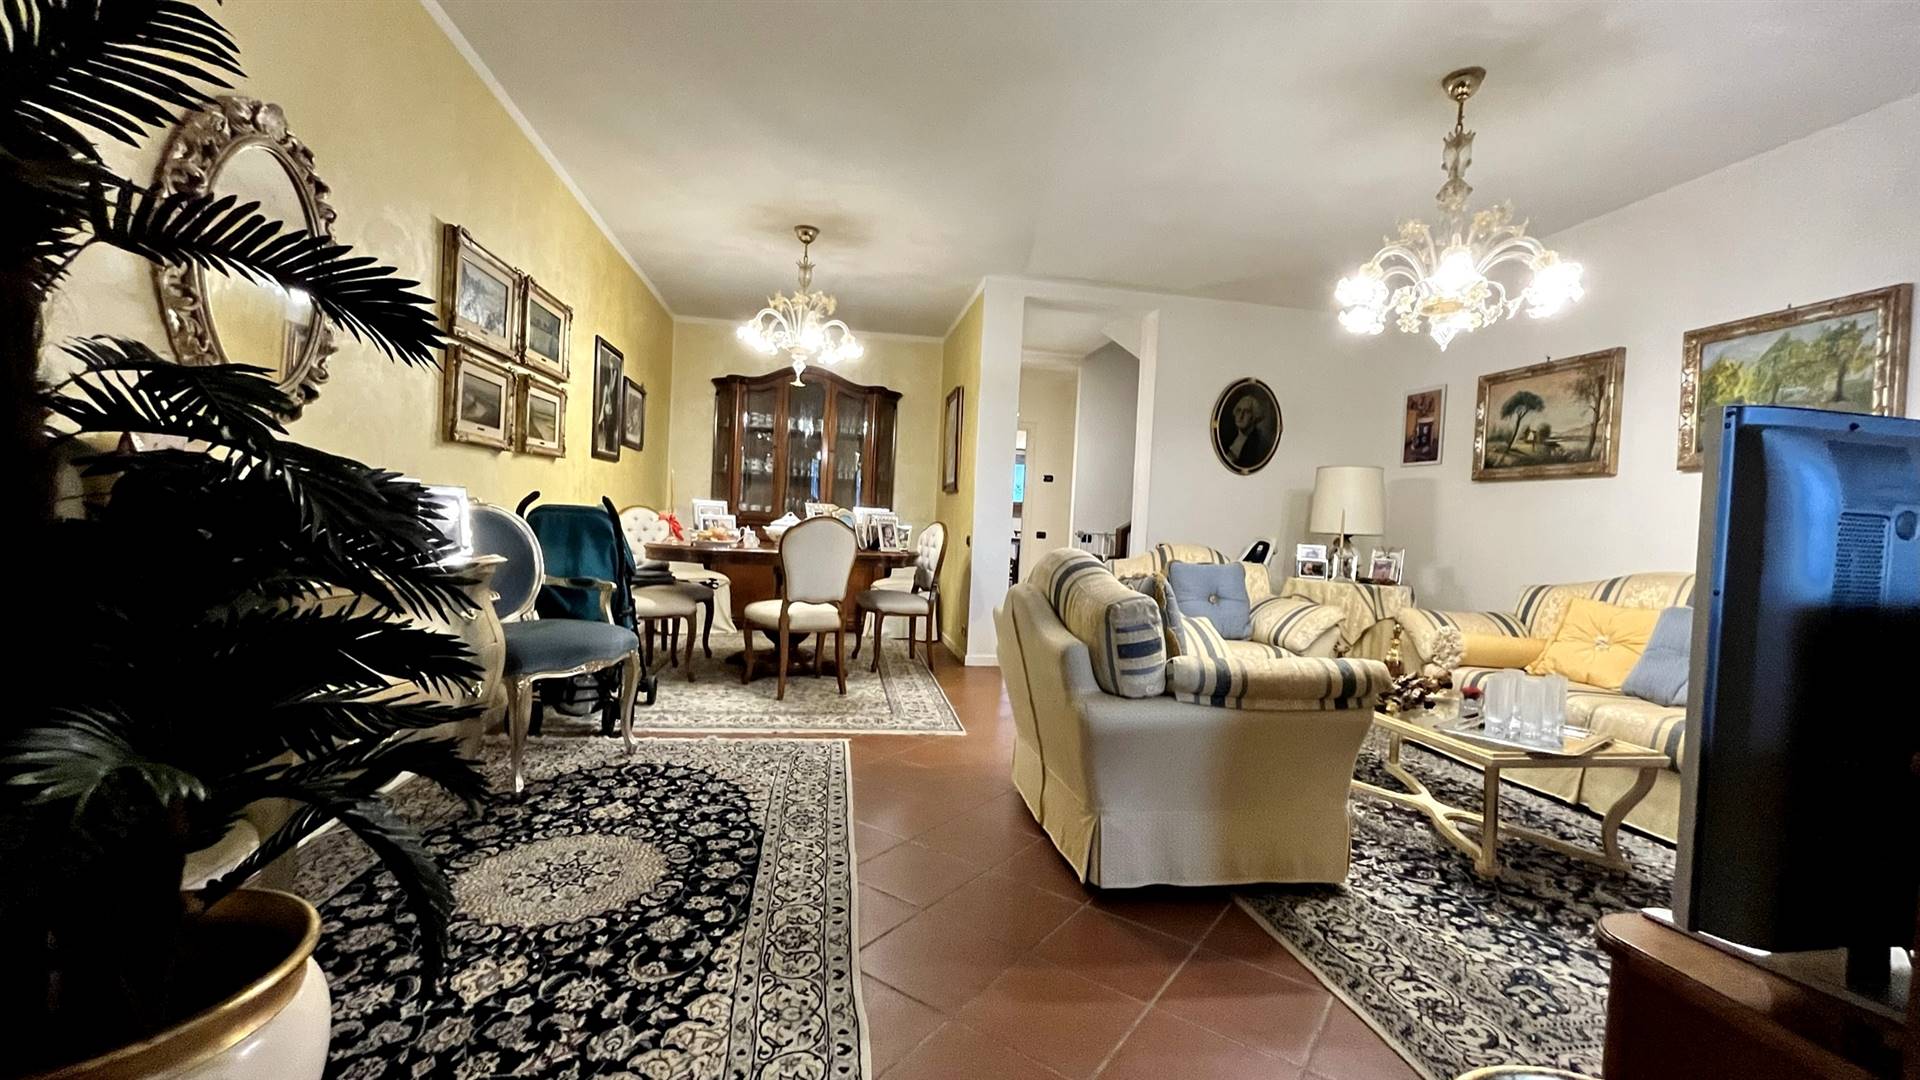 Villa in vendita a Pieve a Nievole, 7 locali, prezzo € 330.000 | PortaleAgenzieImmobiliari.it